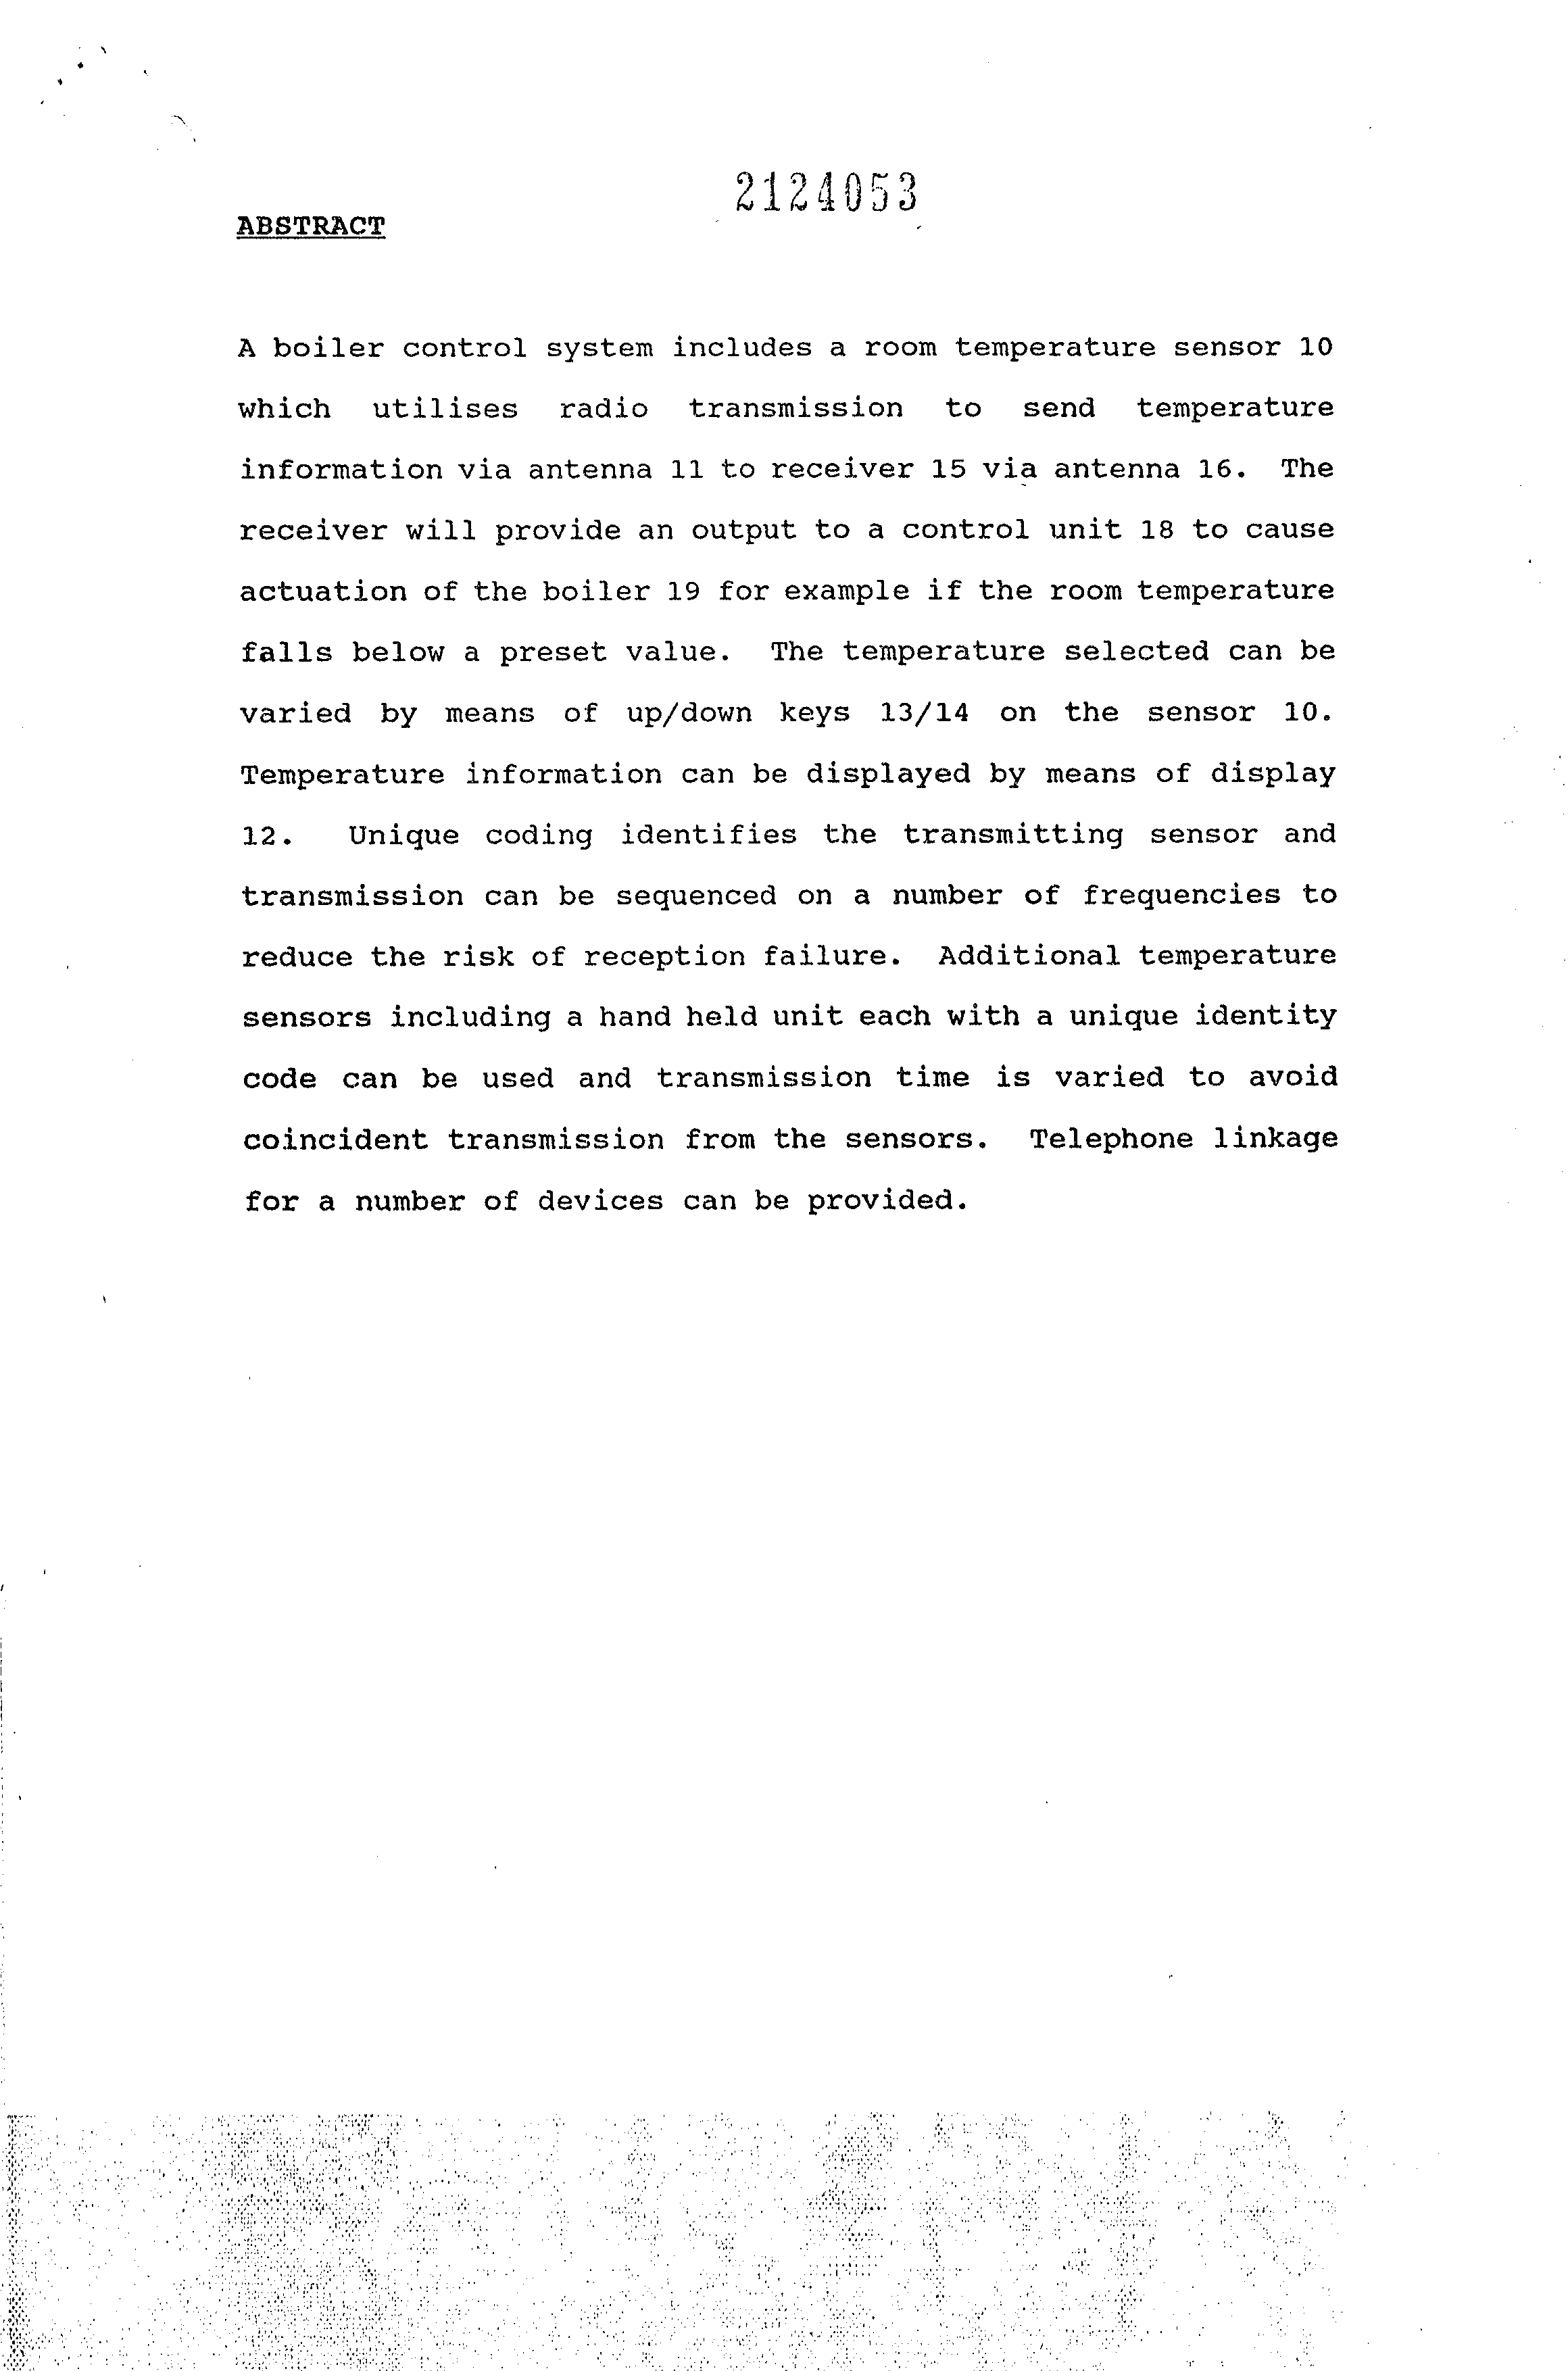 Document de brevet canadien 2124053. Abrégé 19941226. Image 1 de 1